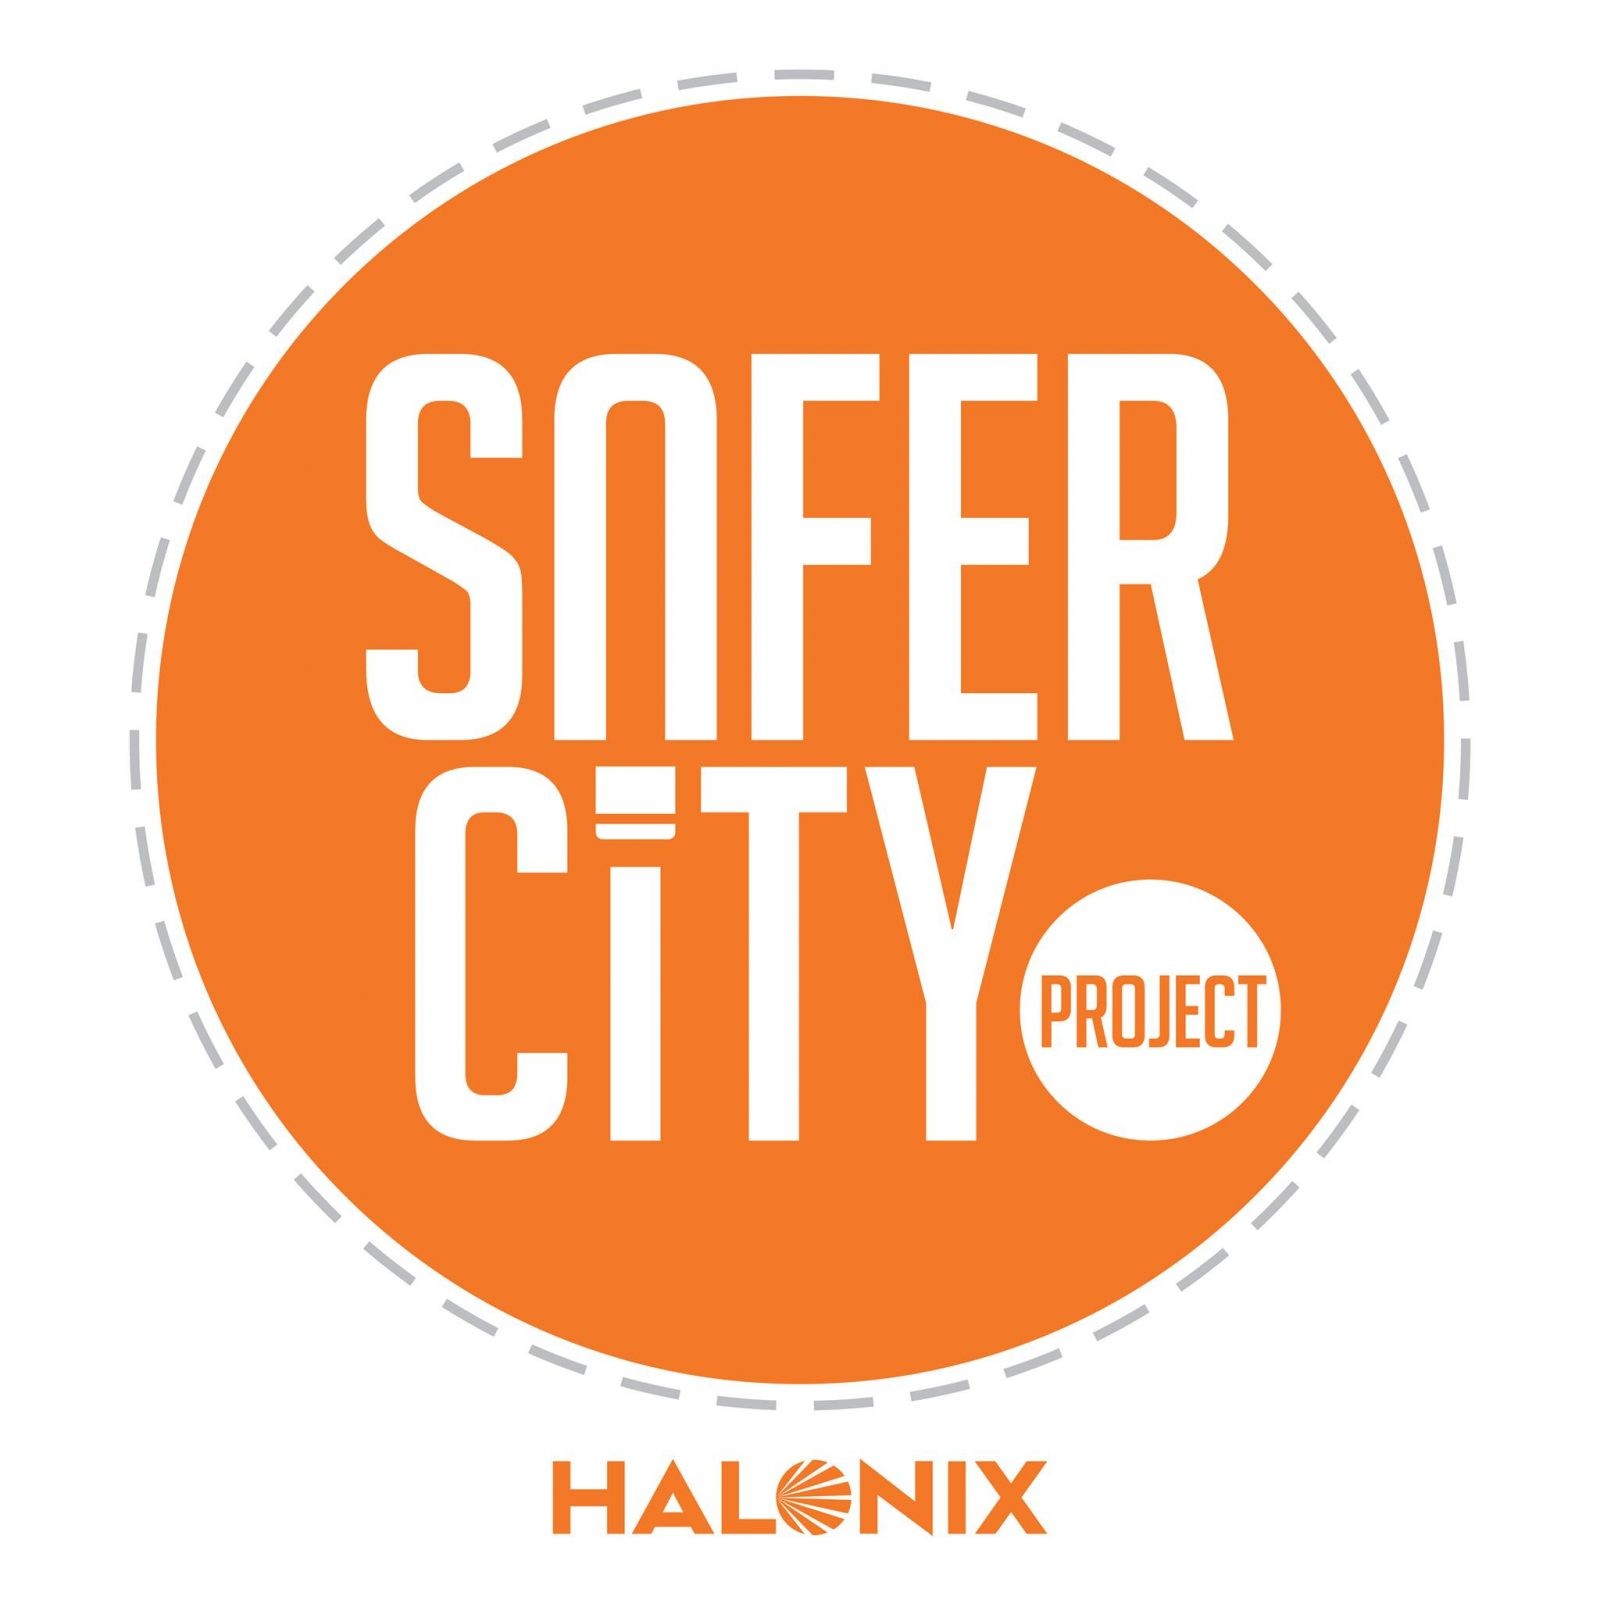 Halonix Safer City Project